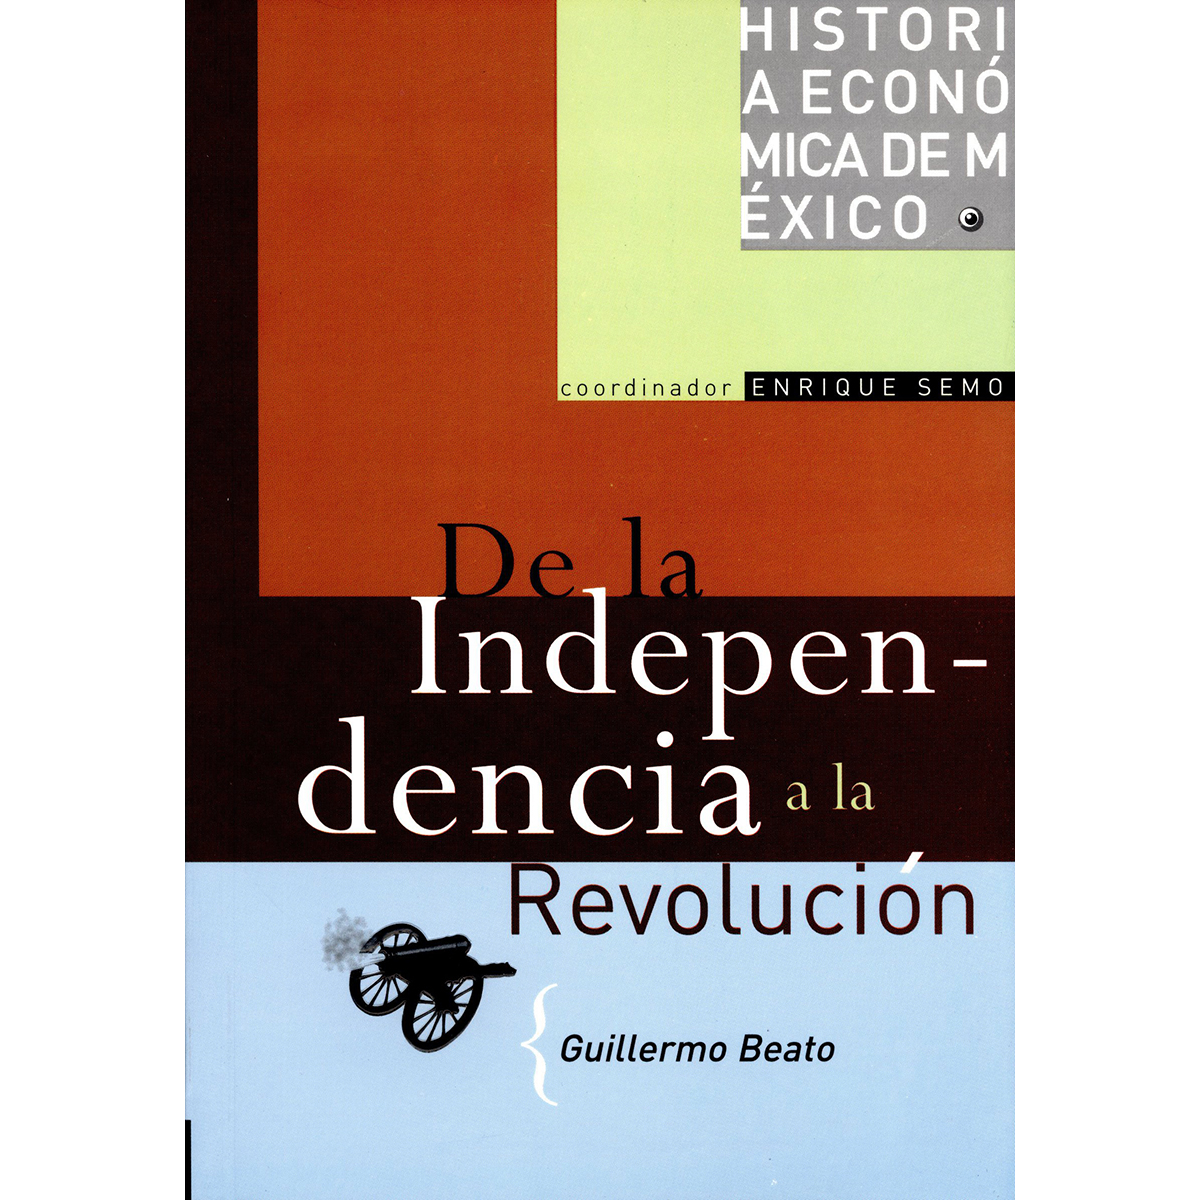 HISTORIA ECONÓMICA DE MÉXICO, VOL. 3. DE LA INDEPENDENCIA A LA REVOLUCIÓN